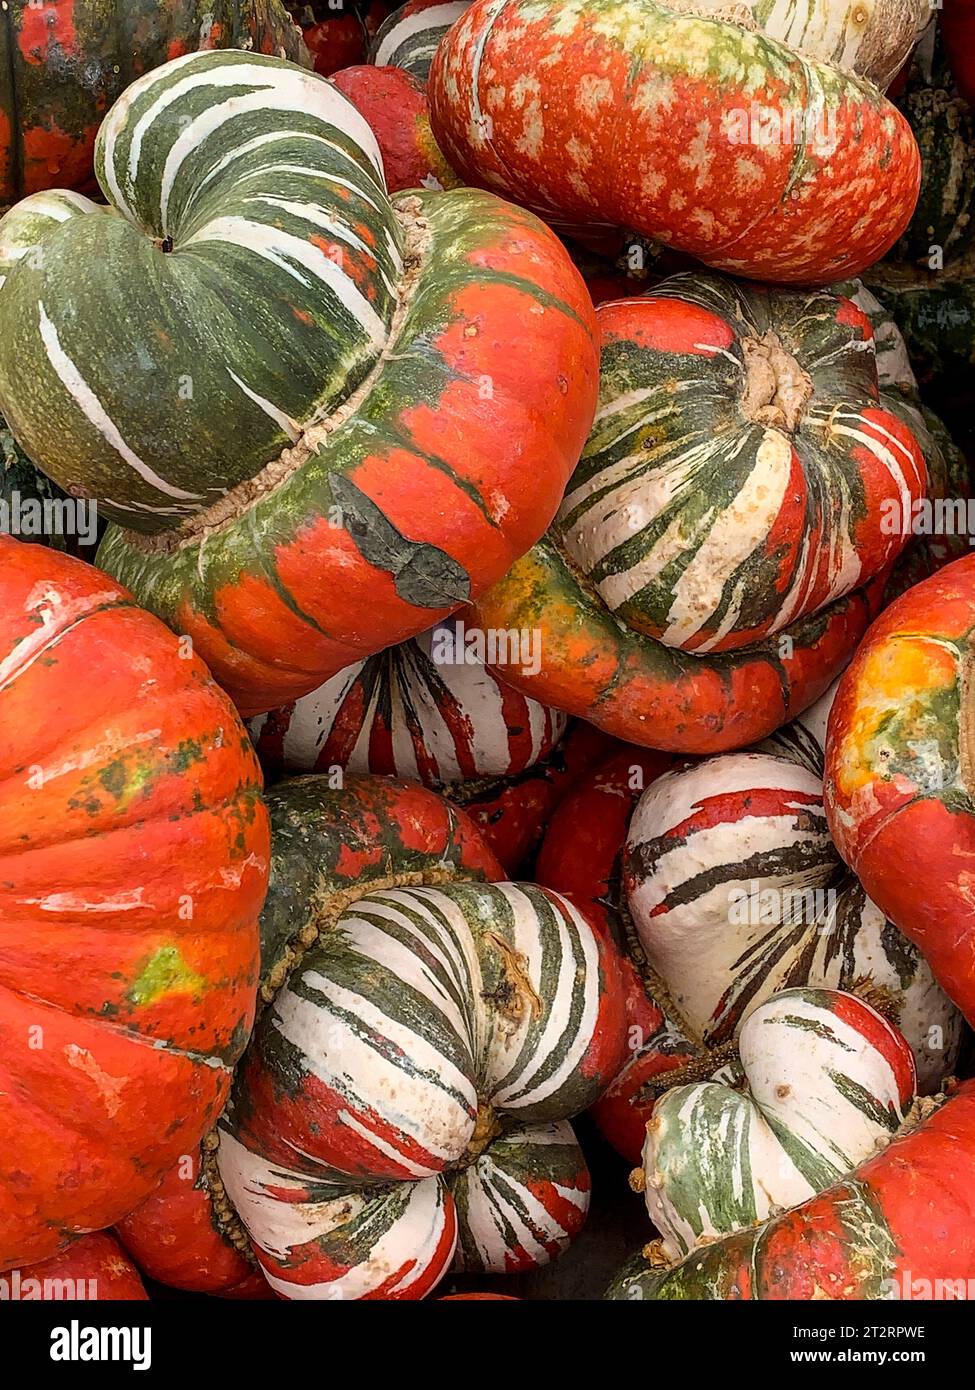 Turban squash, pour Halloween Décoration. Banque D'Images